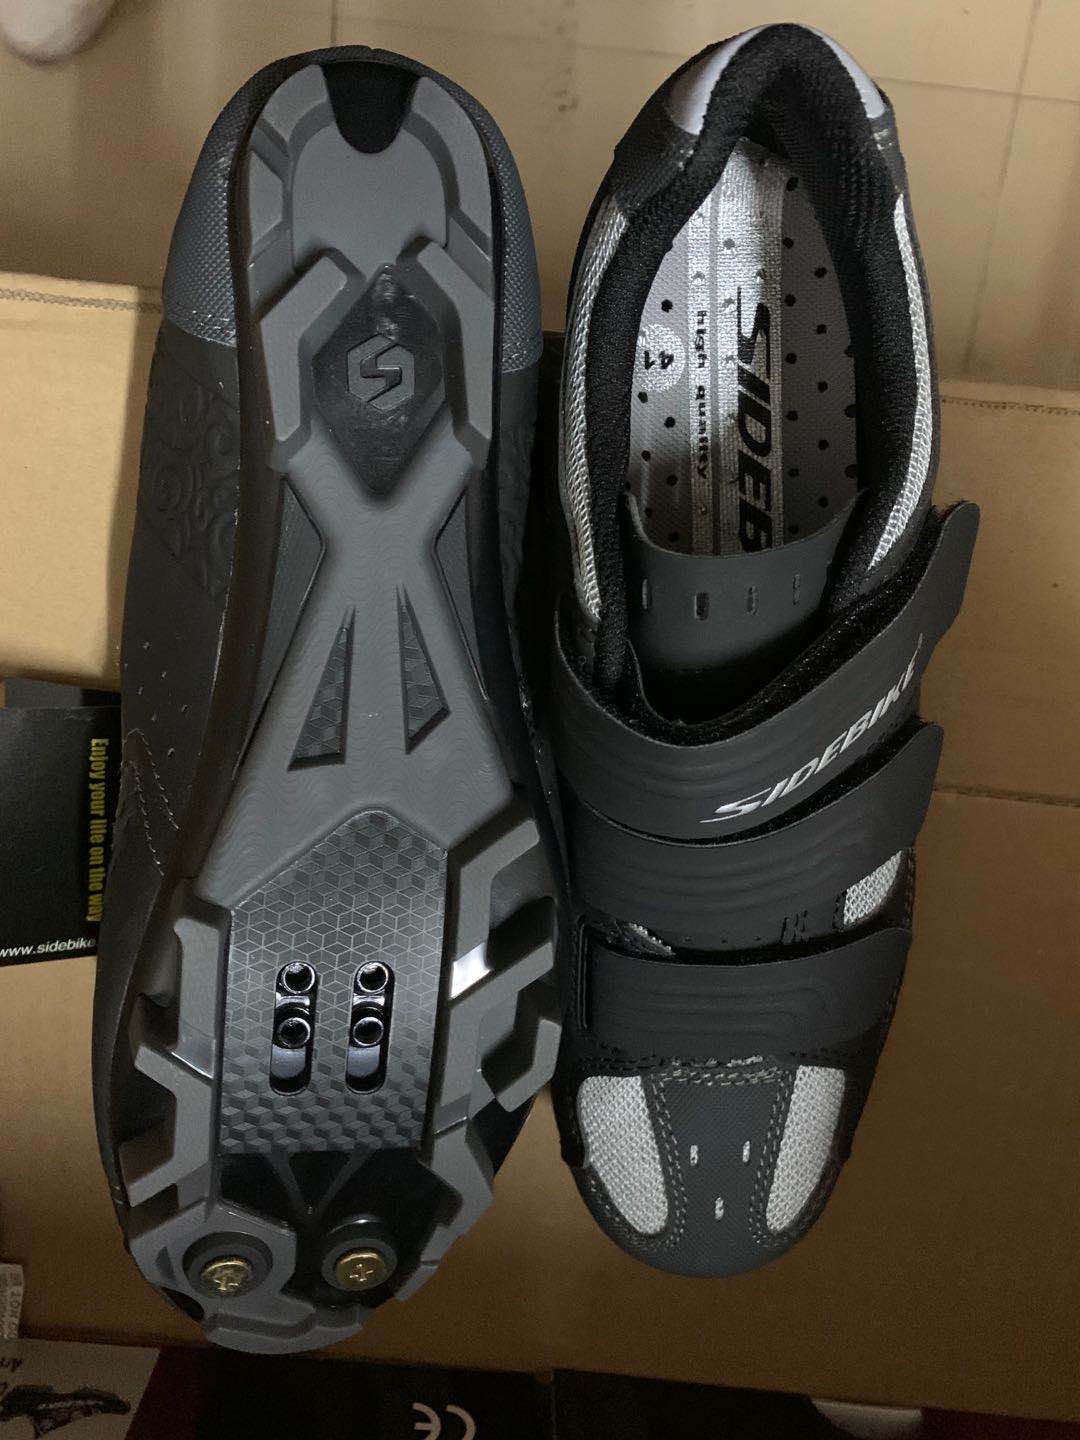 Zapato MTB unisex - Color gris con negro